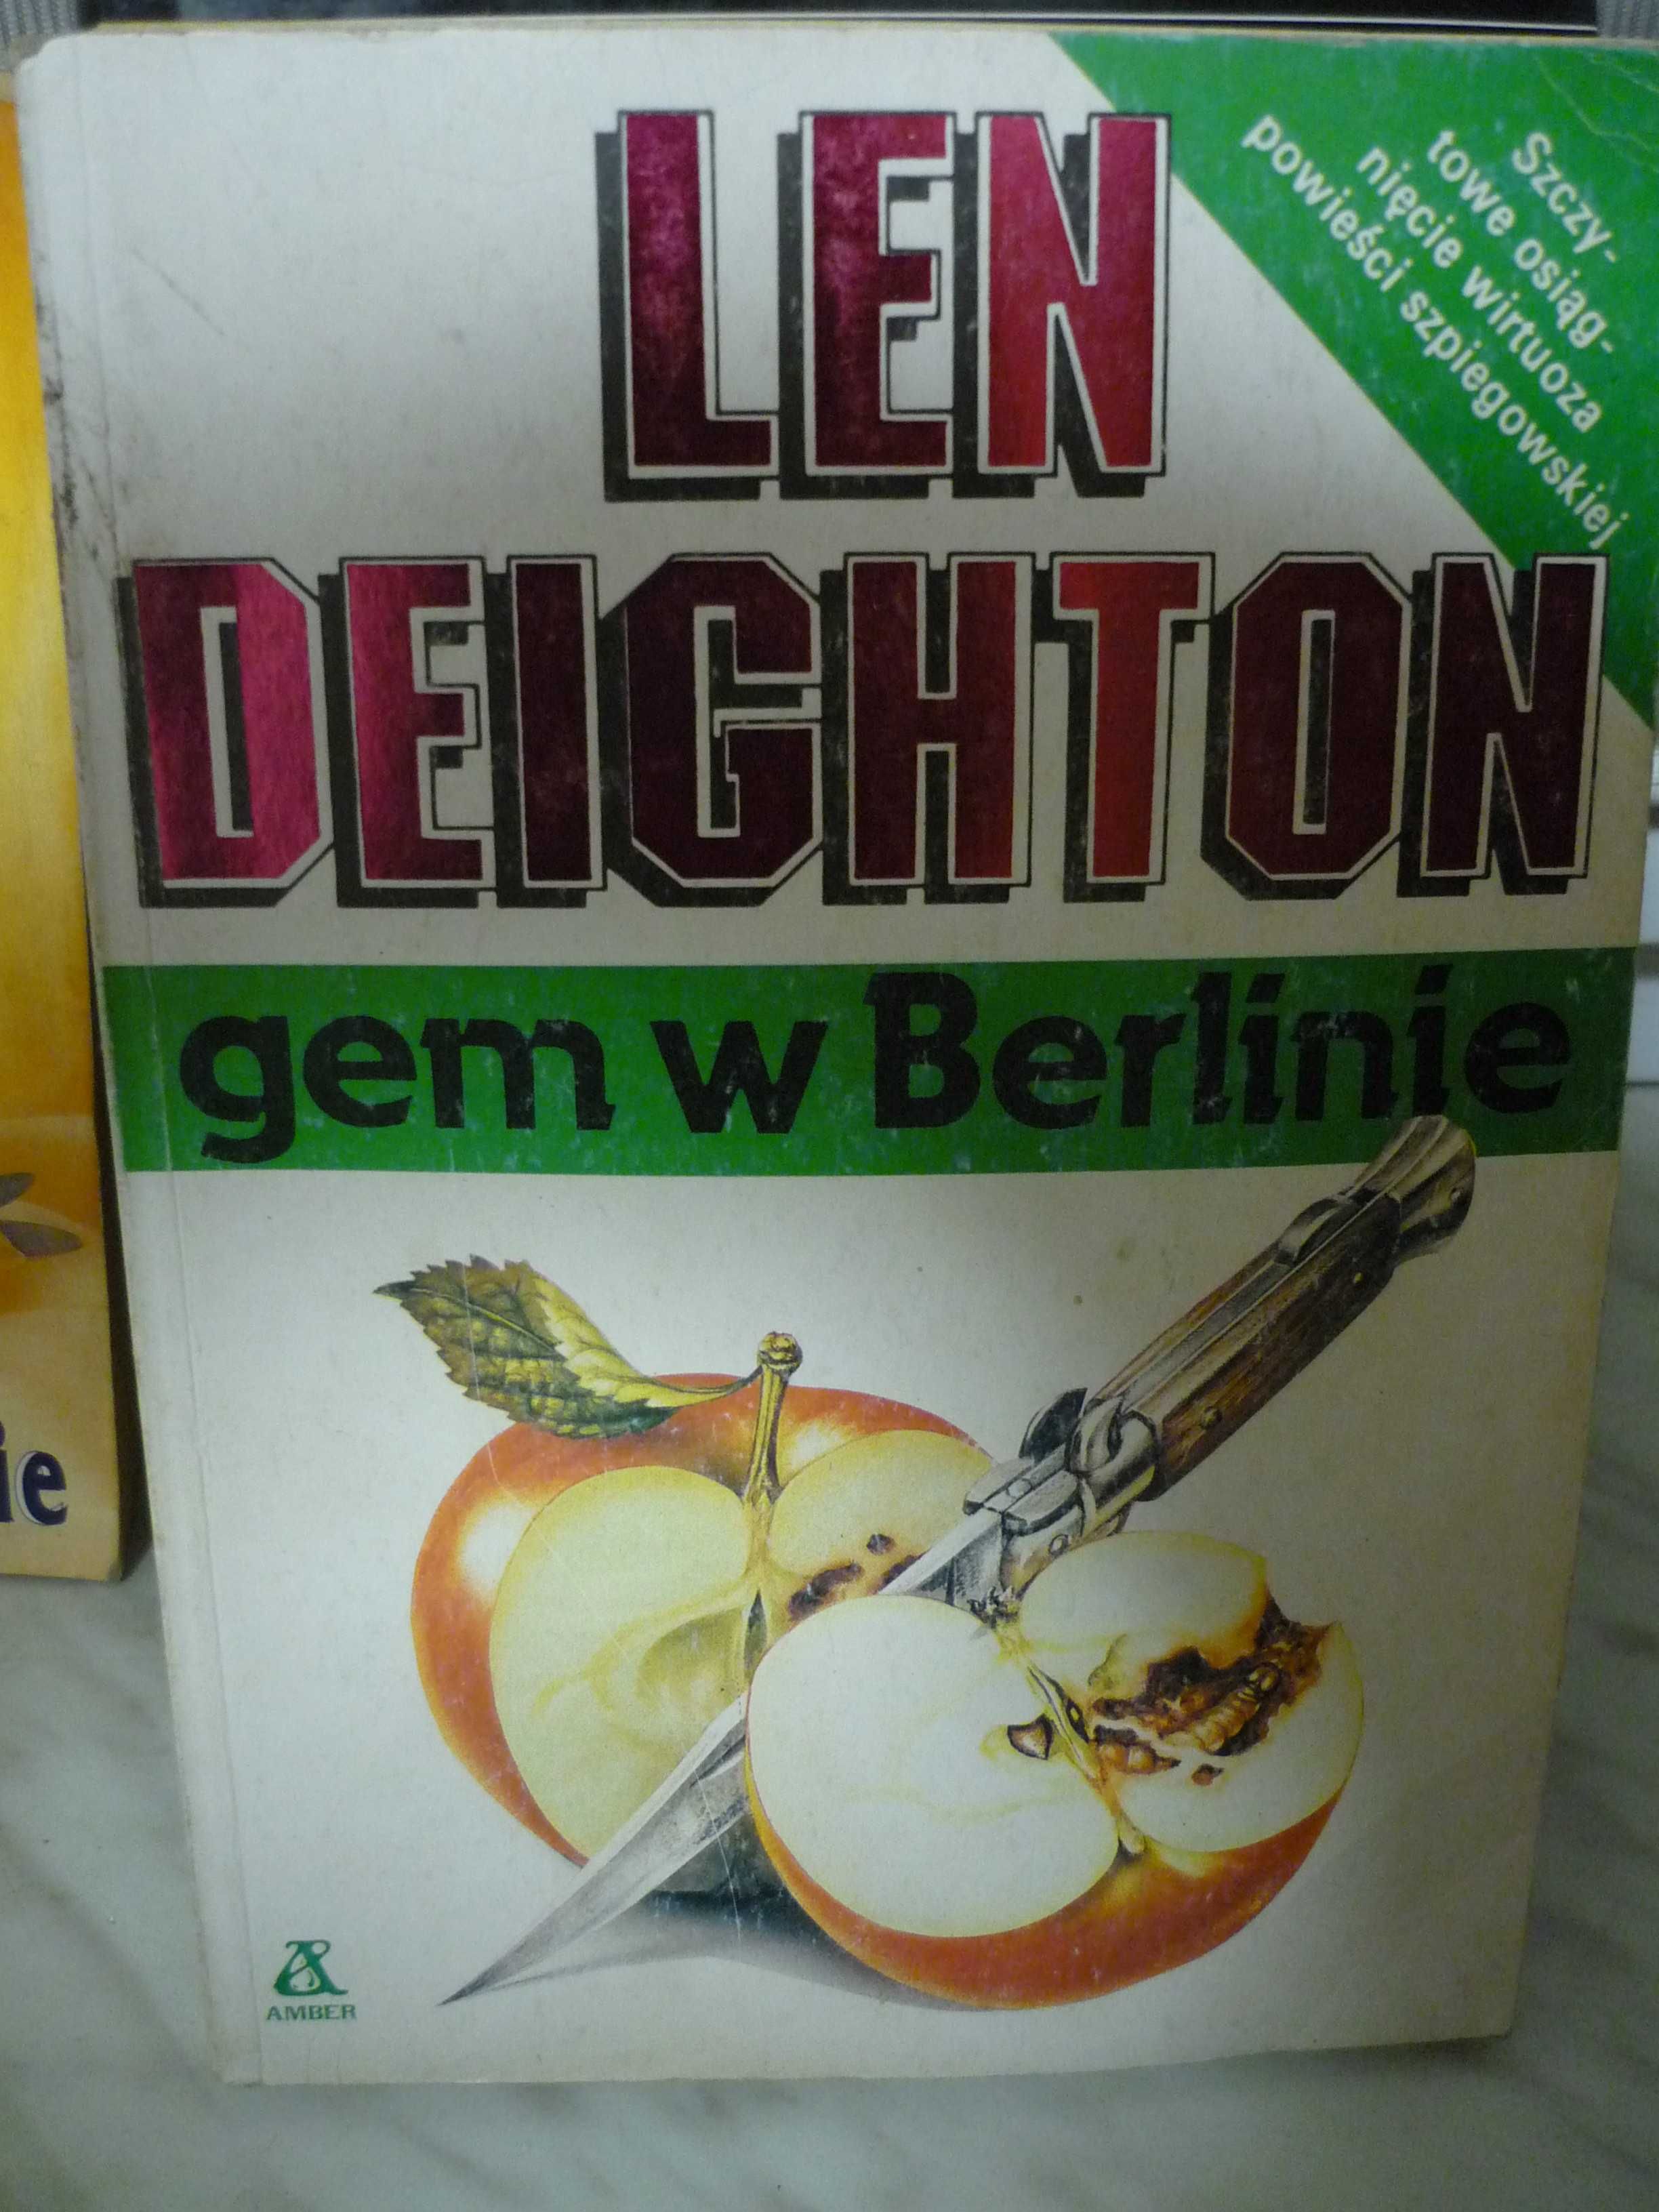 Gem w Berlinie , Len Deighton.